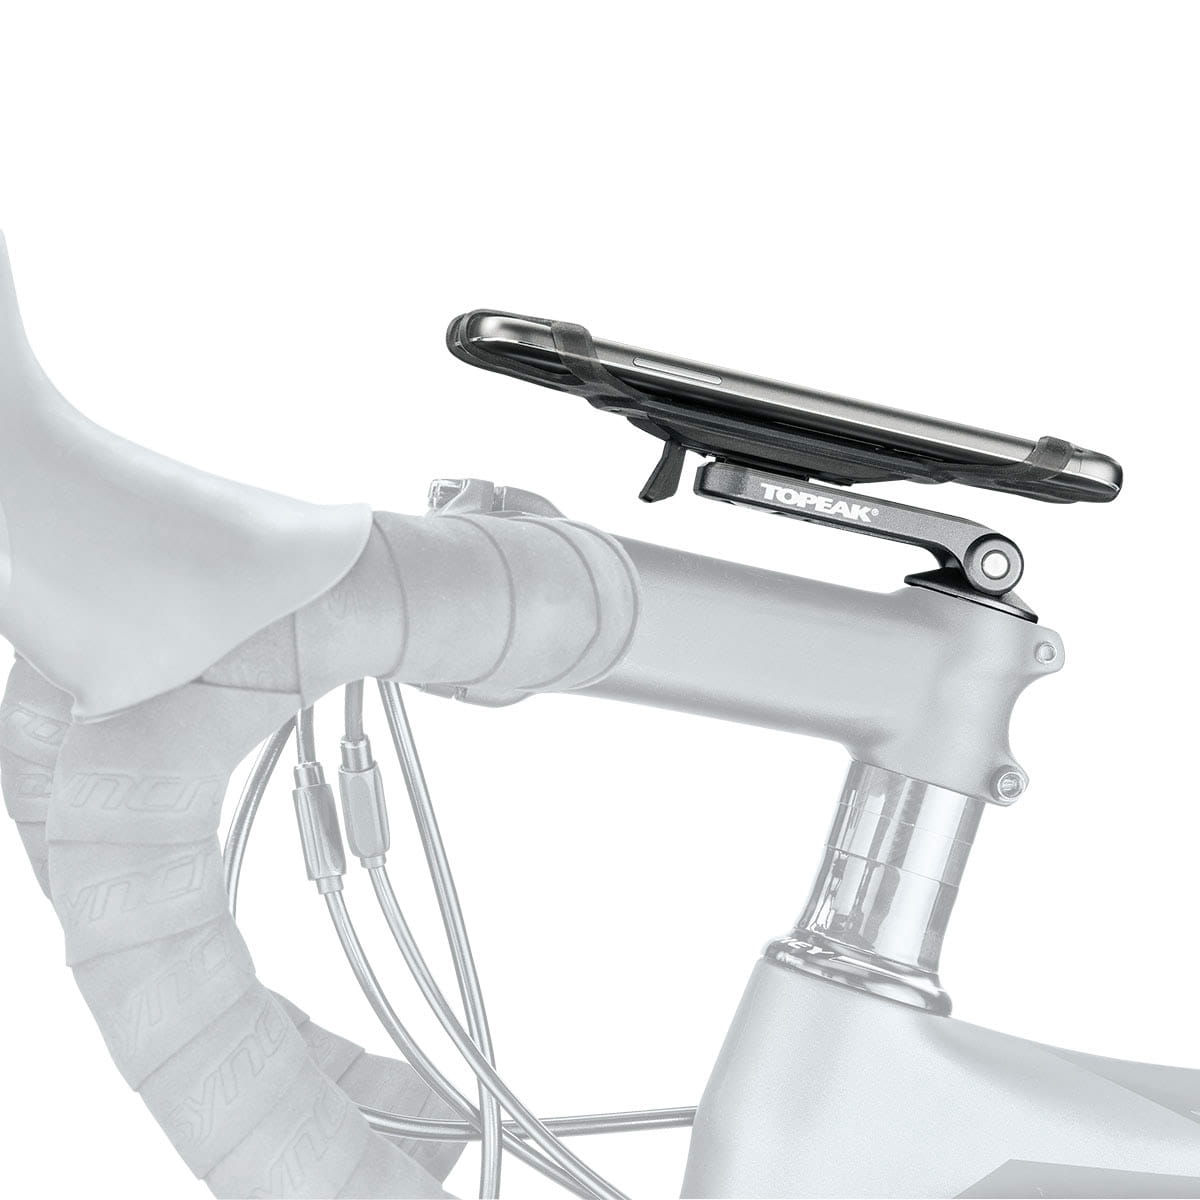 Topeak Omni RideCase DX Fahrrad Smartphone-Halterung